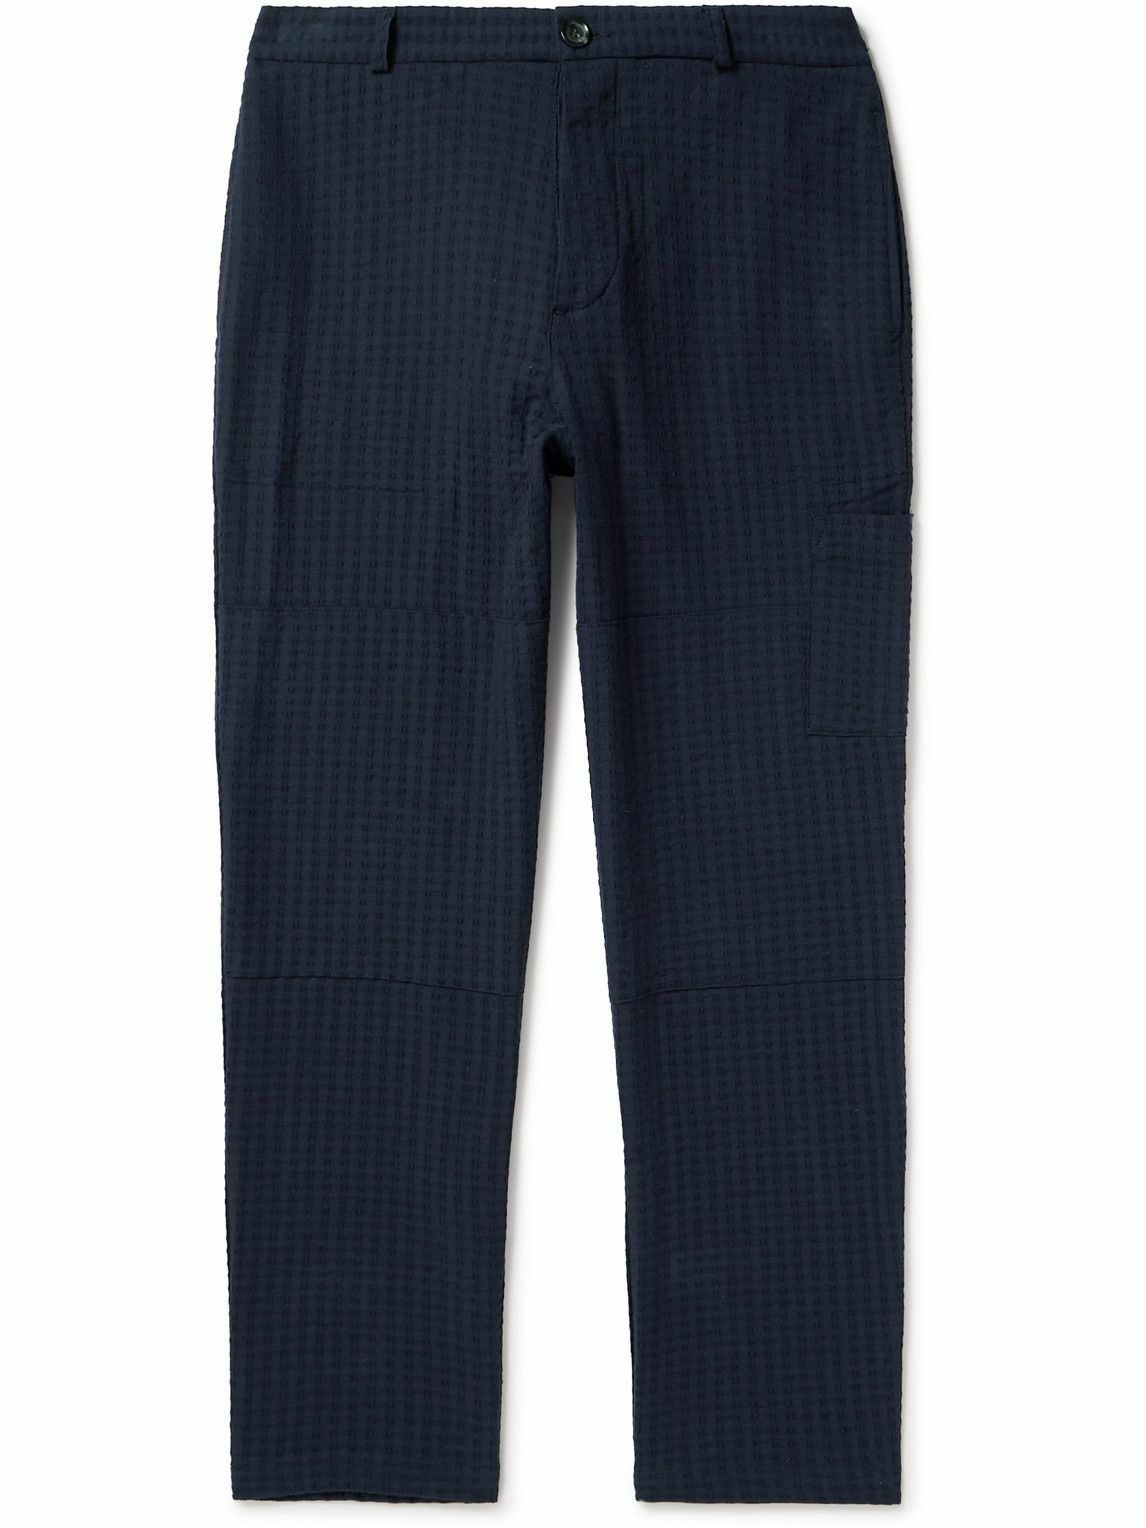 OLIVER SPENCER Adler Straight-Leg Cotton-Tweed Trousers for Men